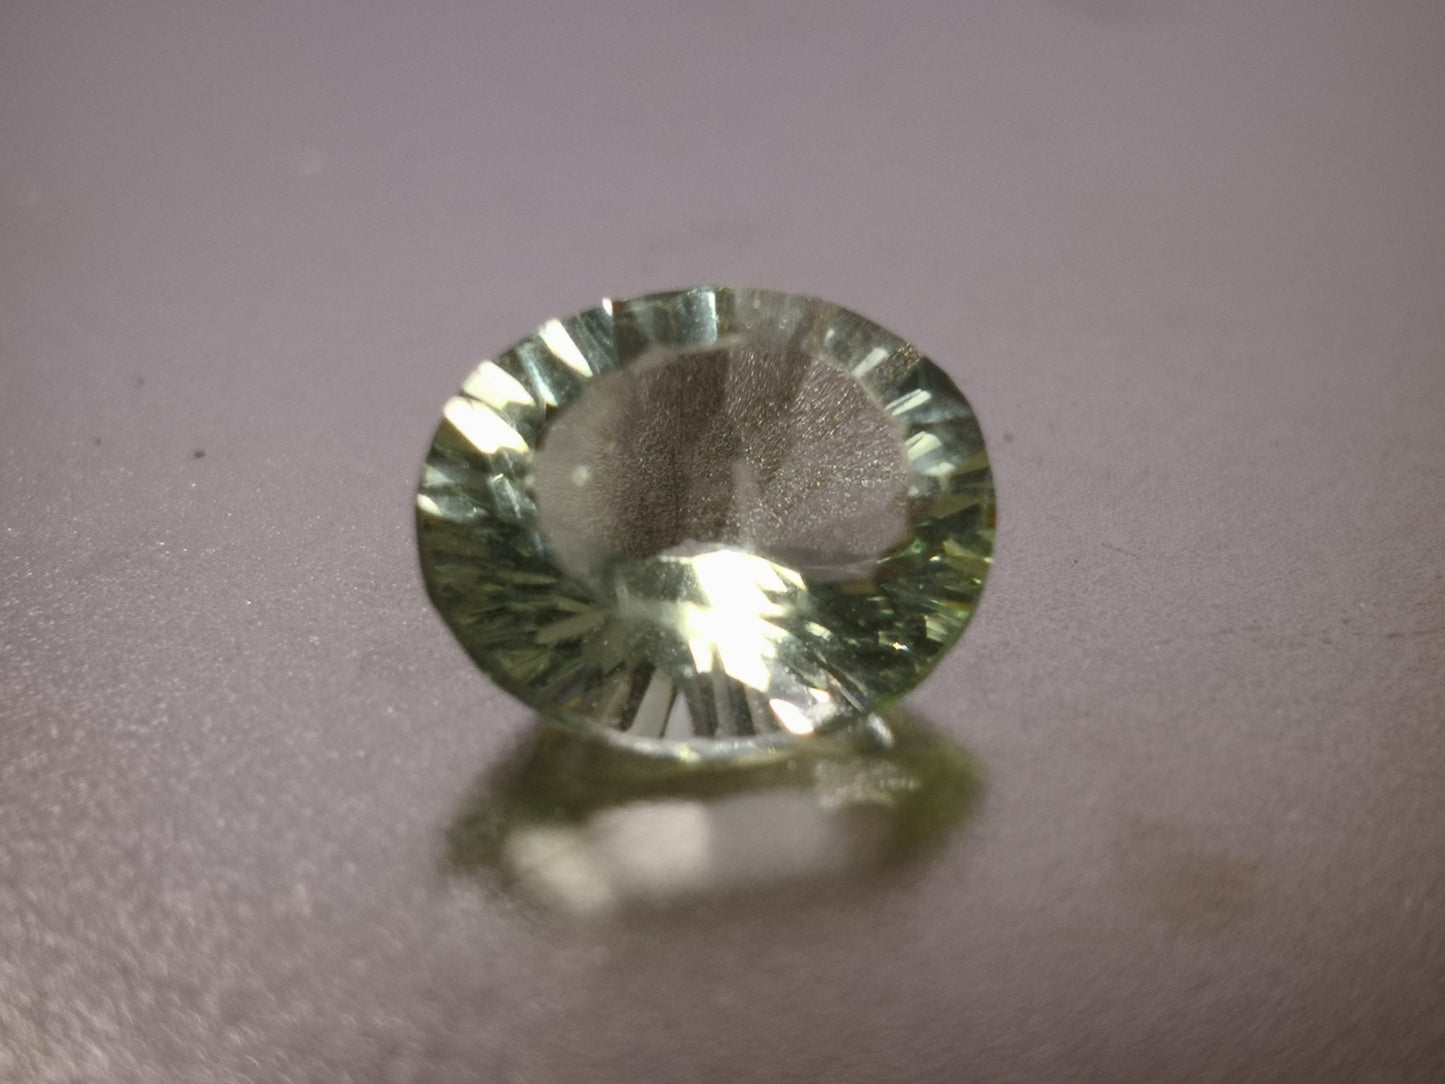 Fluorite taglio ovale concavo 5,05 ct